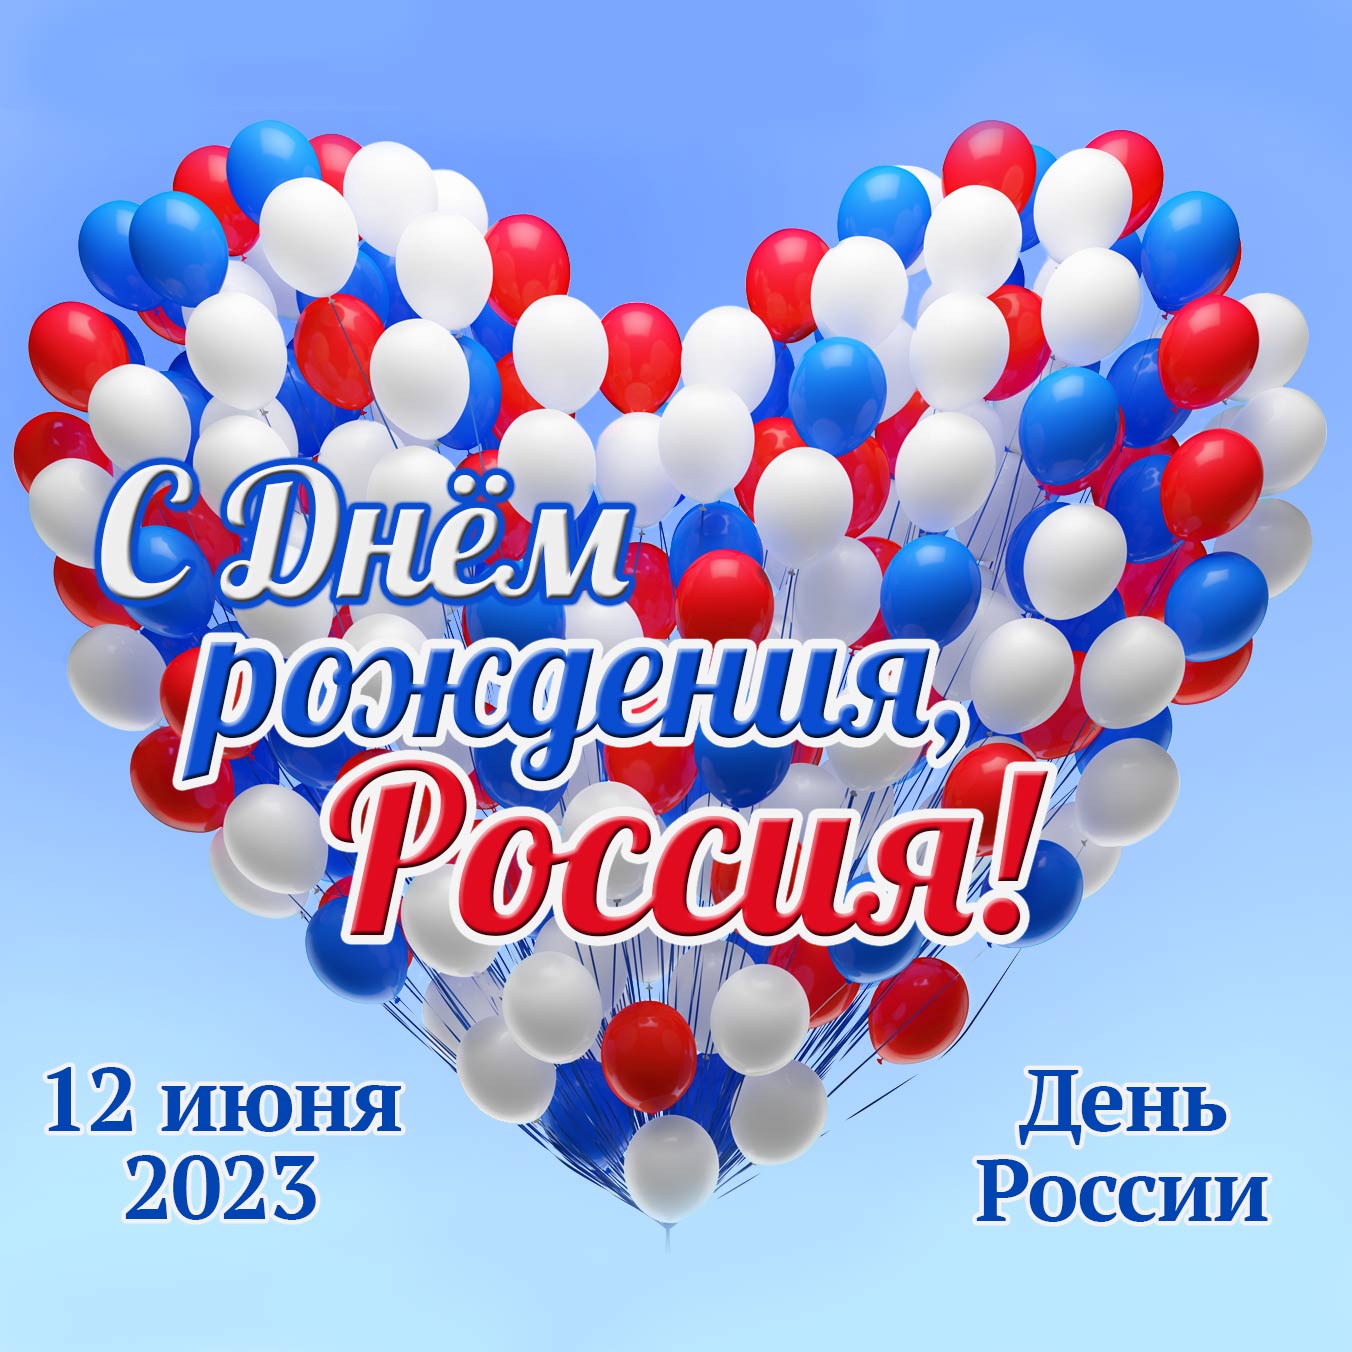 С Днём рождения Россия! 12 июня 2023 - День России.